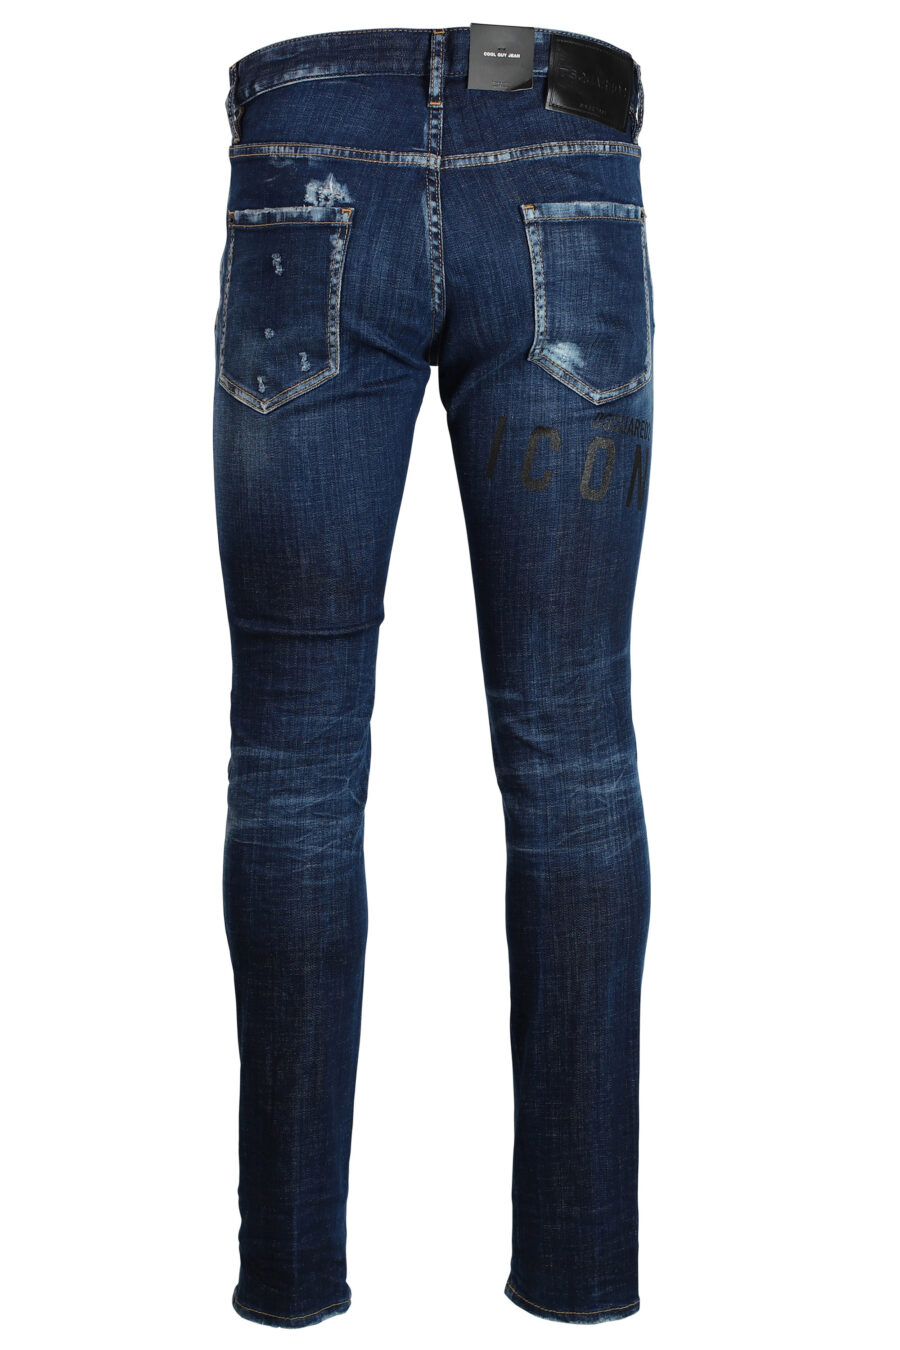 Icon cool guy" Jeans dunkelblau semi-getragen - 8052134643259 3